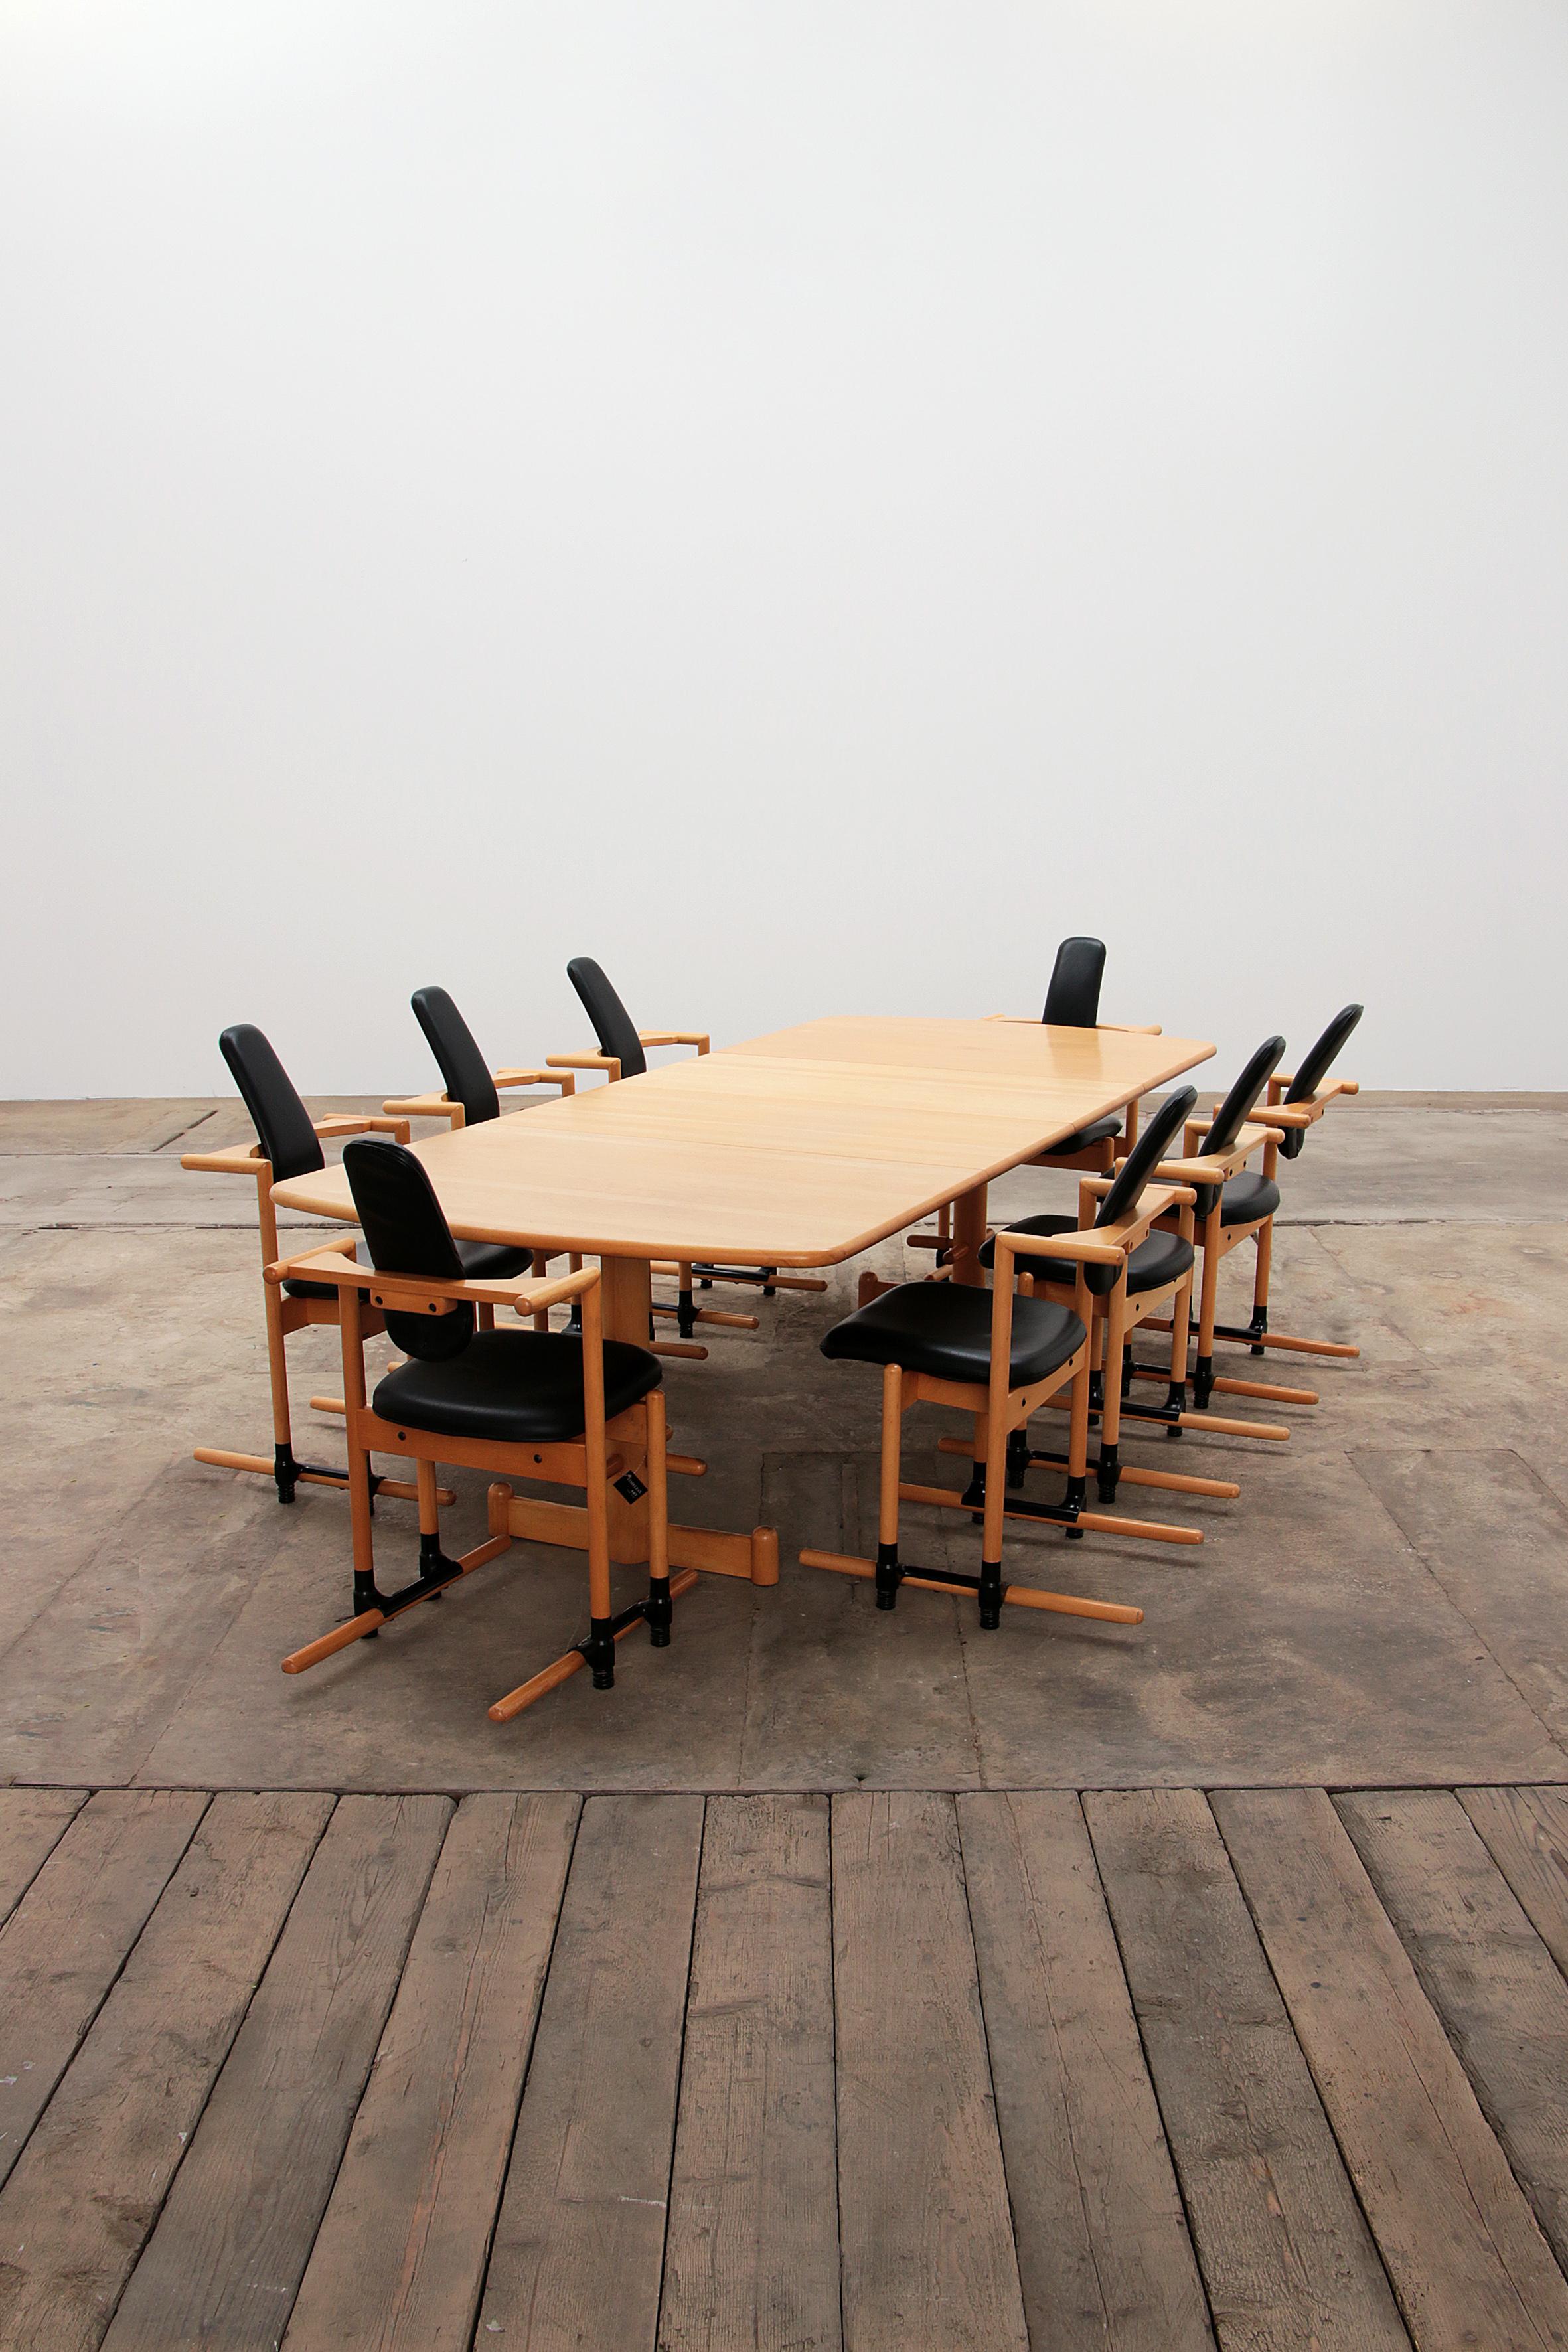 Der Flysit-Stuhl wurde 1983 von Peter Opsvik entworfen,

mit Schwerpunkt auf Produktdesign als Mittel zur Lösung von Problemen der realen Welt.

Dieser Stuhl kombiniert Rückenstütze und dynamische Bewegung.

Wenn Sie arbeiten, bleibt Ihre